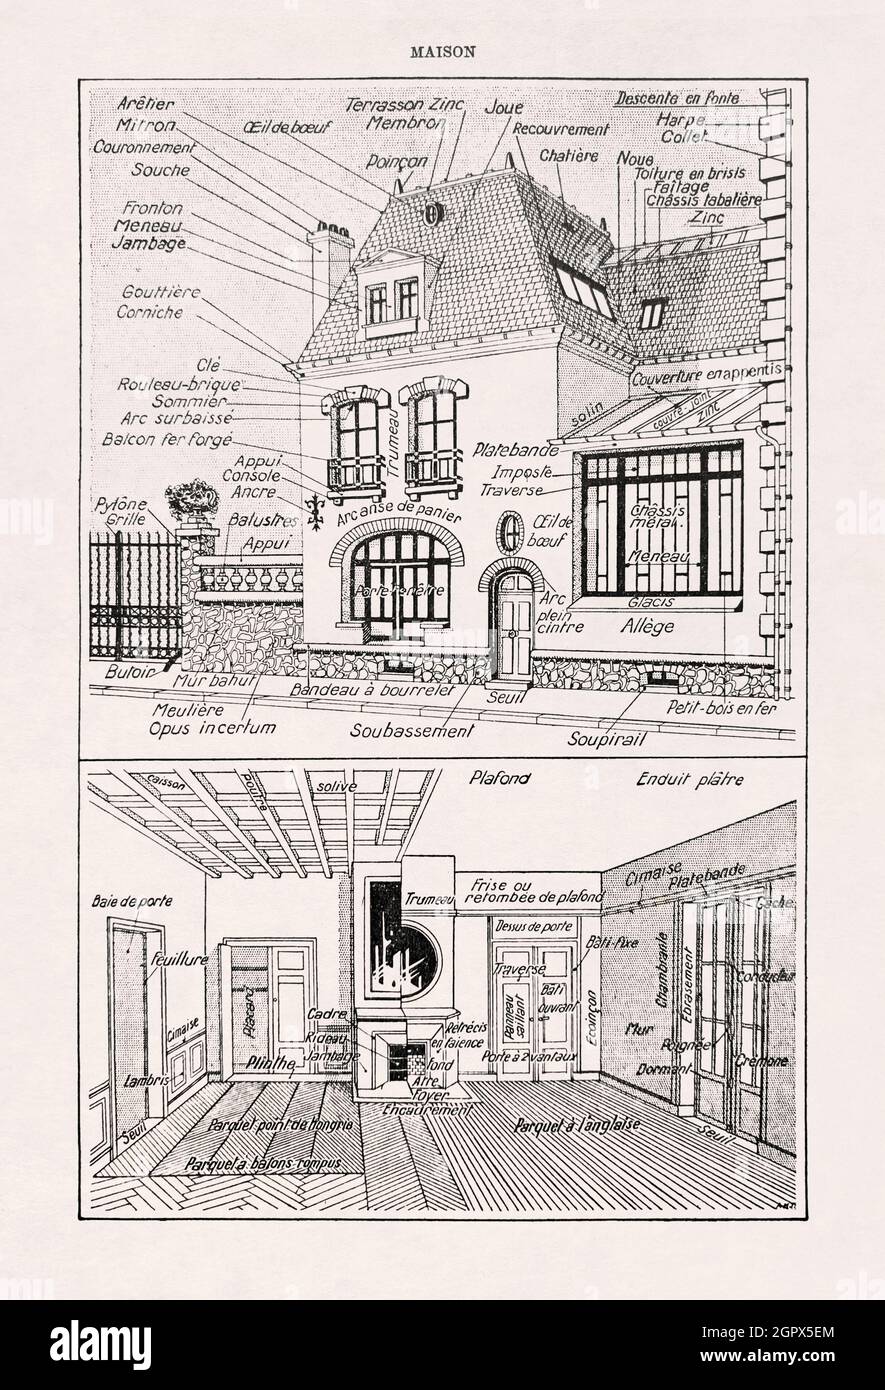 Alte Illustration, die den Wortschatz in der Hausarchitektur zeigt, gedruckt im französischen Wörterbuch im Jahr 1899. Stockfoto